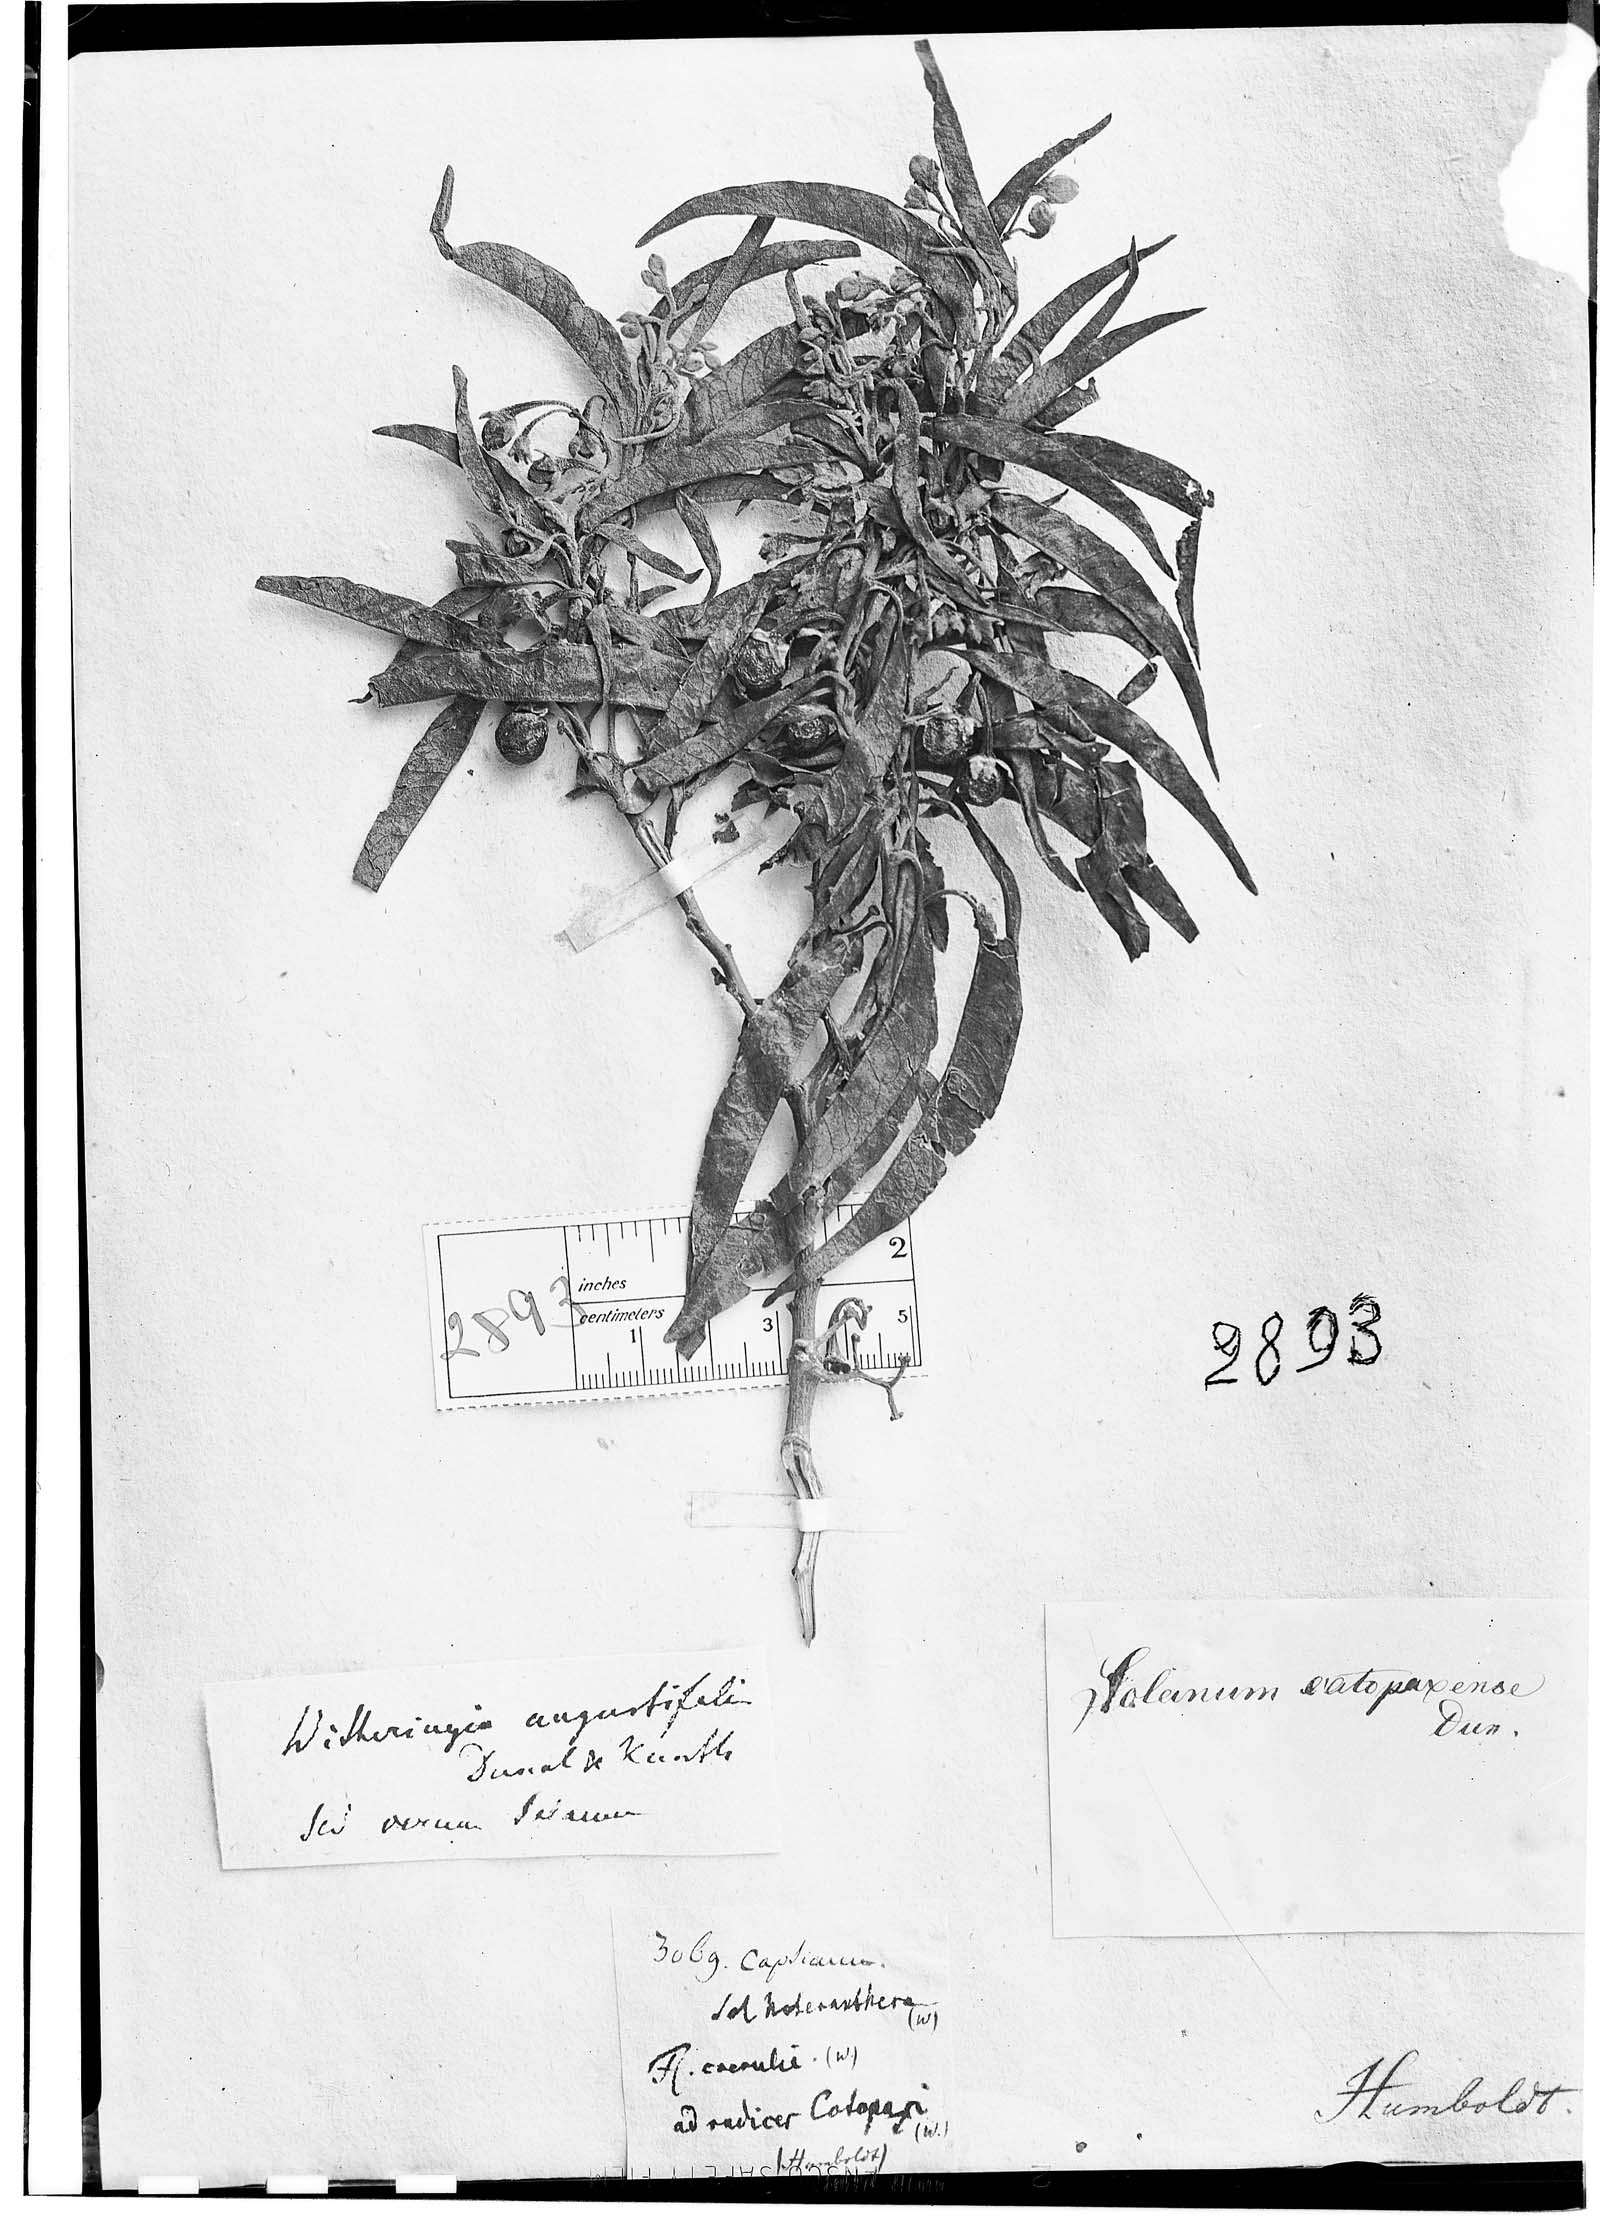 Solanum nitidum image